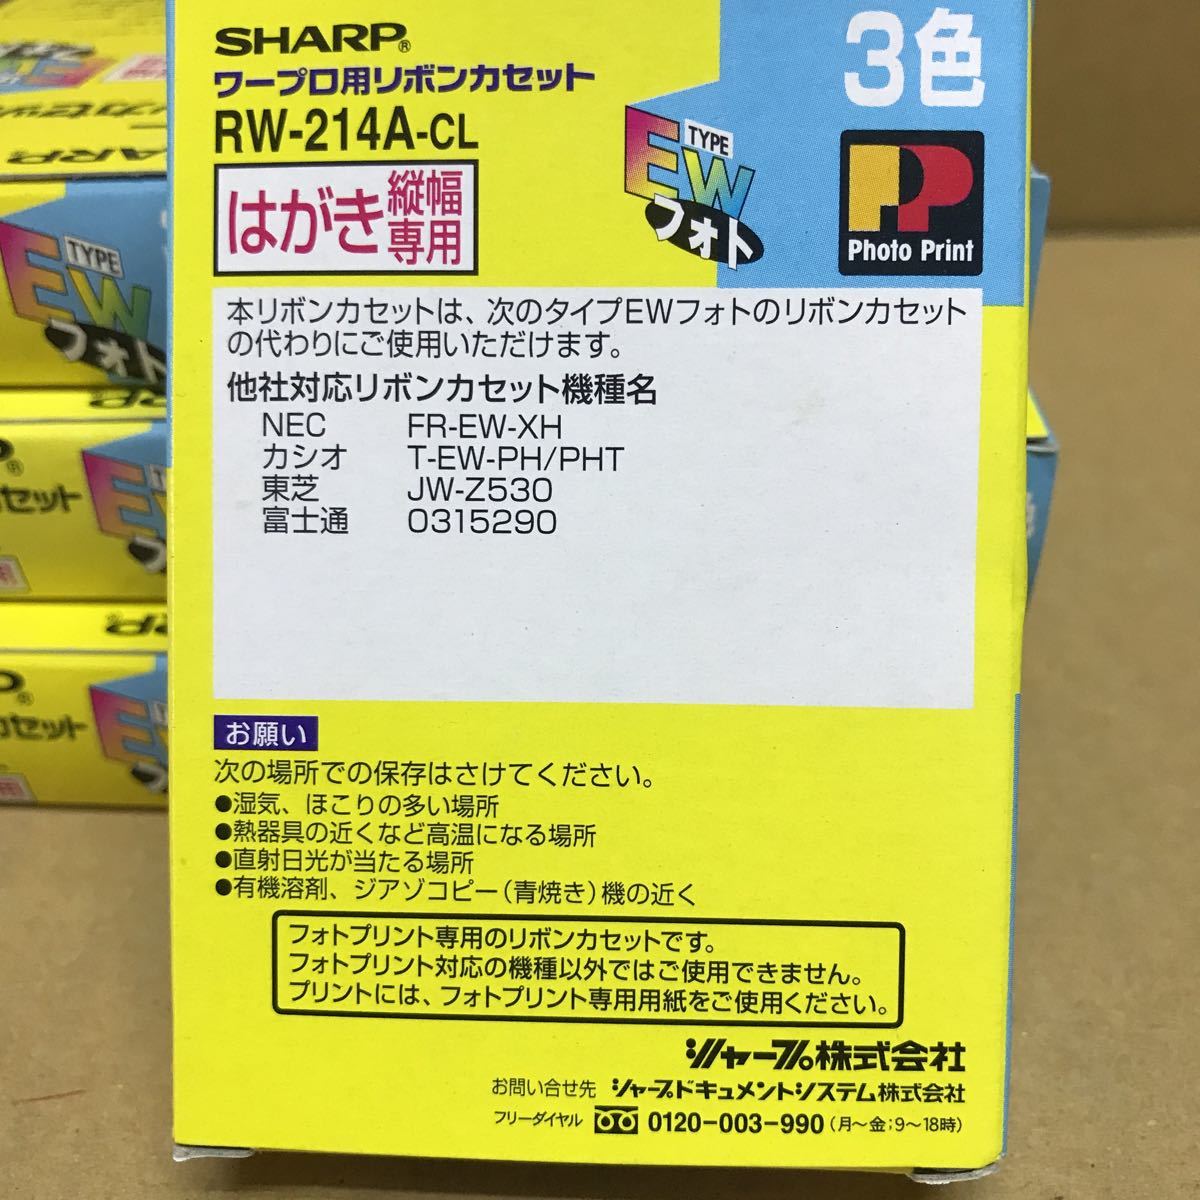 SHARP sharp color ribbon cassette RW-214A-CL